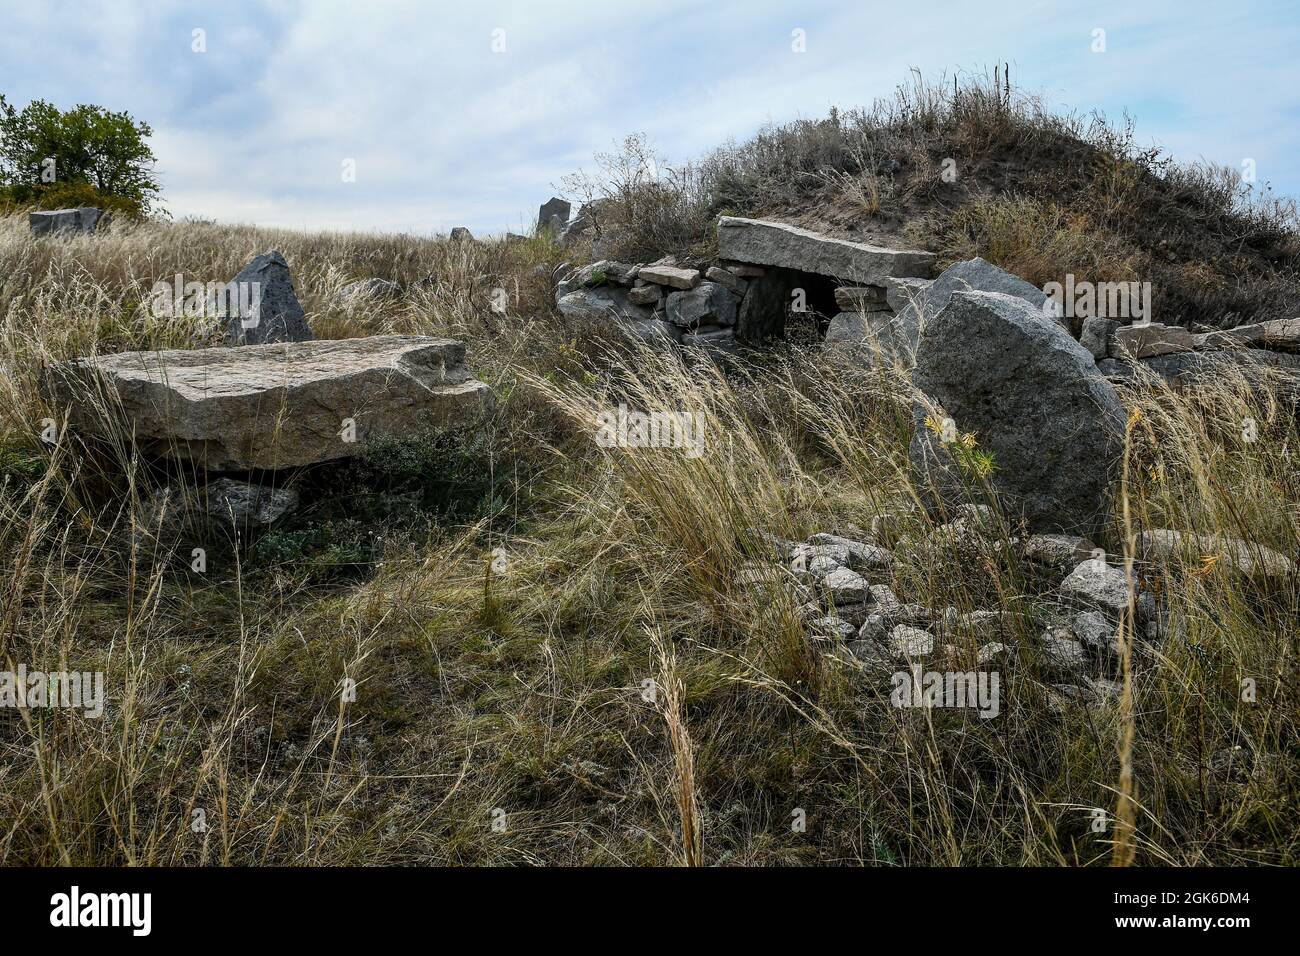 ZAPORIZHZHIA REGION, UKRAINE - SEPTEMBER 11, 2021 - The Scythian Camp Park of Megaliths is pictured during the Legends of Steppe 2021 Open Folk Festiv Stock Photo